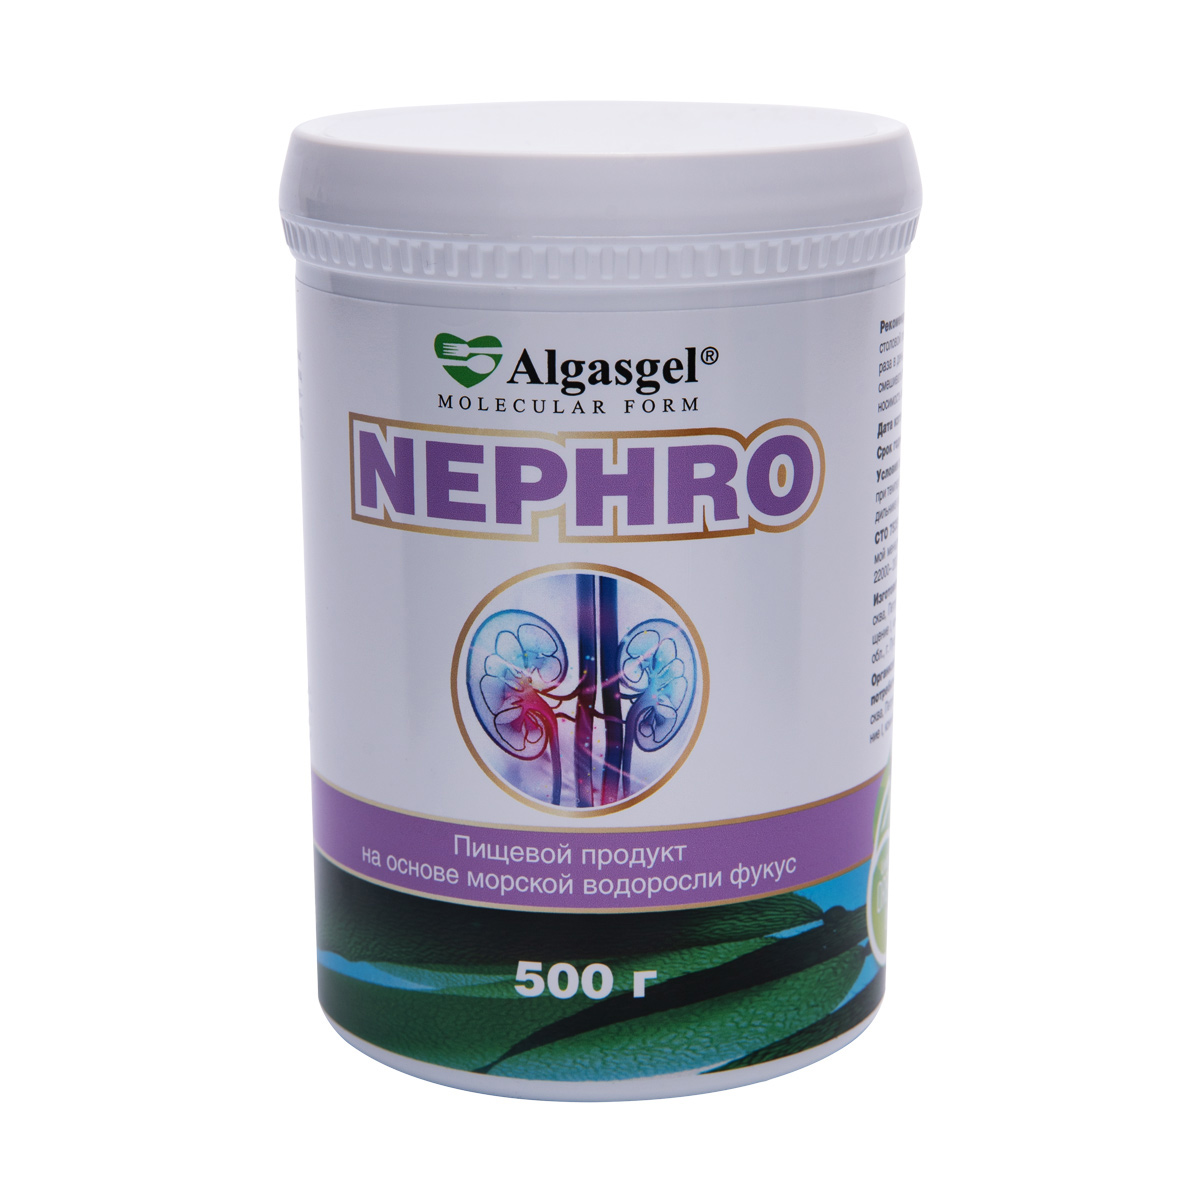 Algasgel Nephro для комплексного оздоровления почек и мочевыделительной системы (500 г)